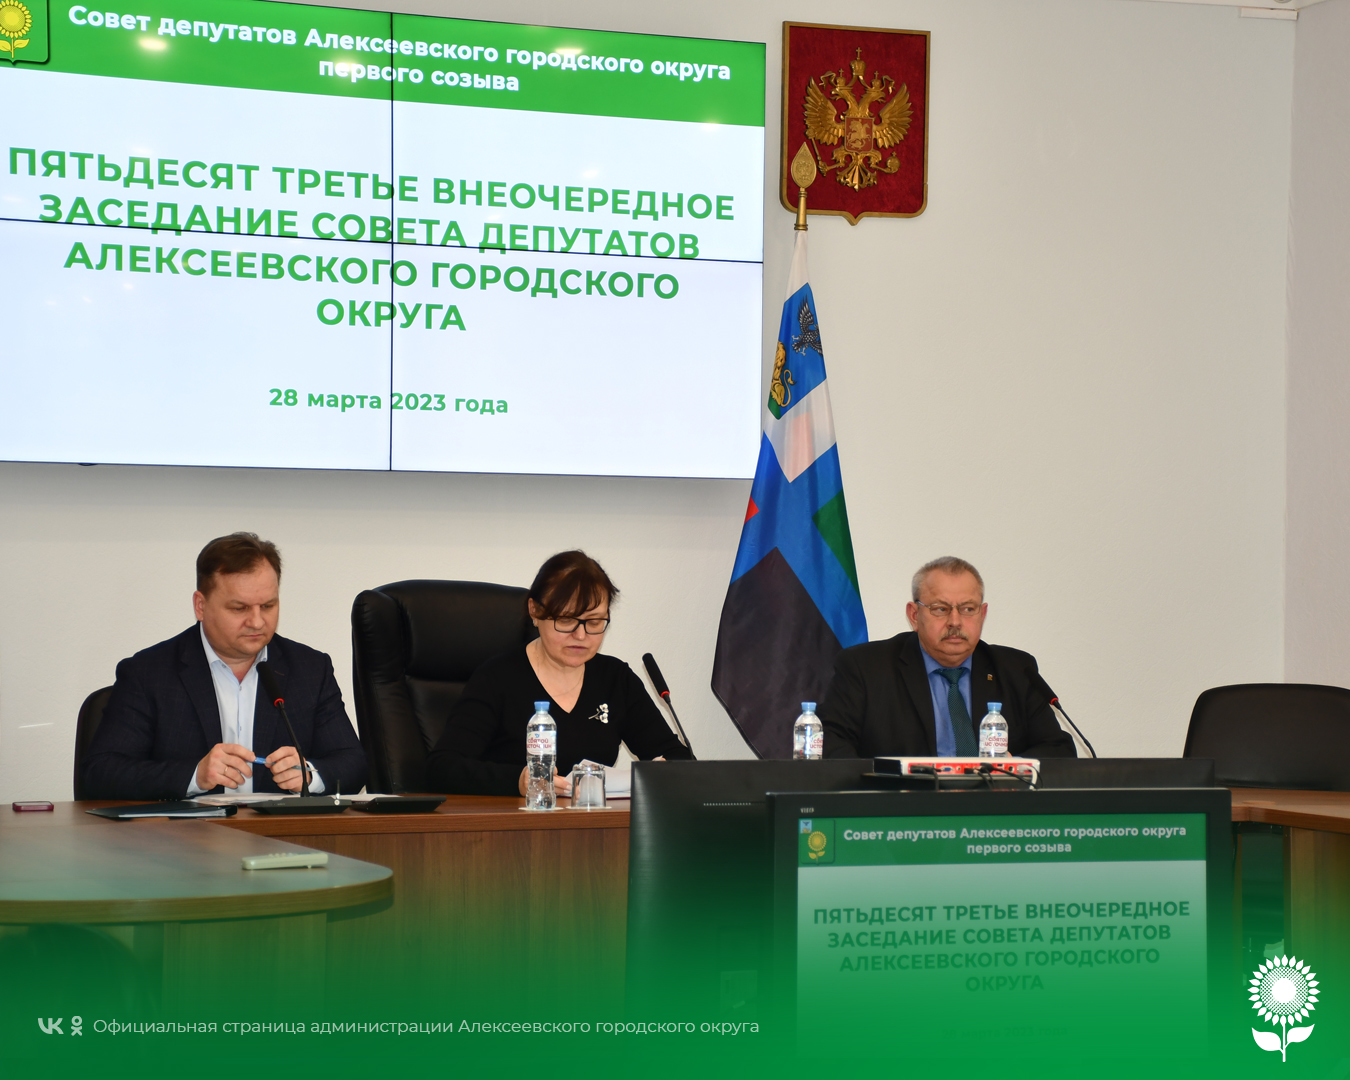 В Алексеевке состоялось пятьдесят третье внеочередное заседание Совета депутатов